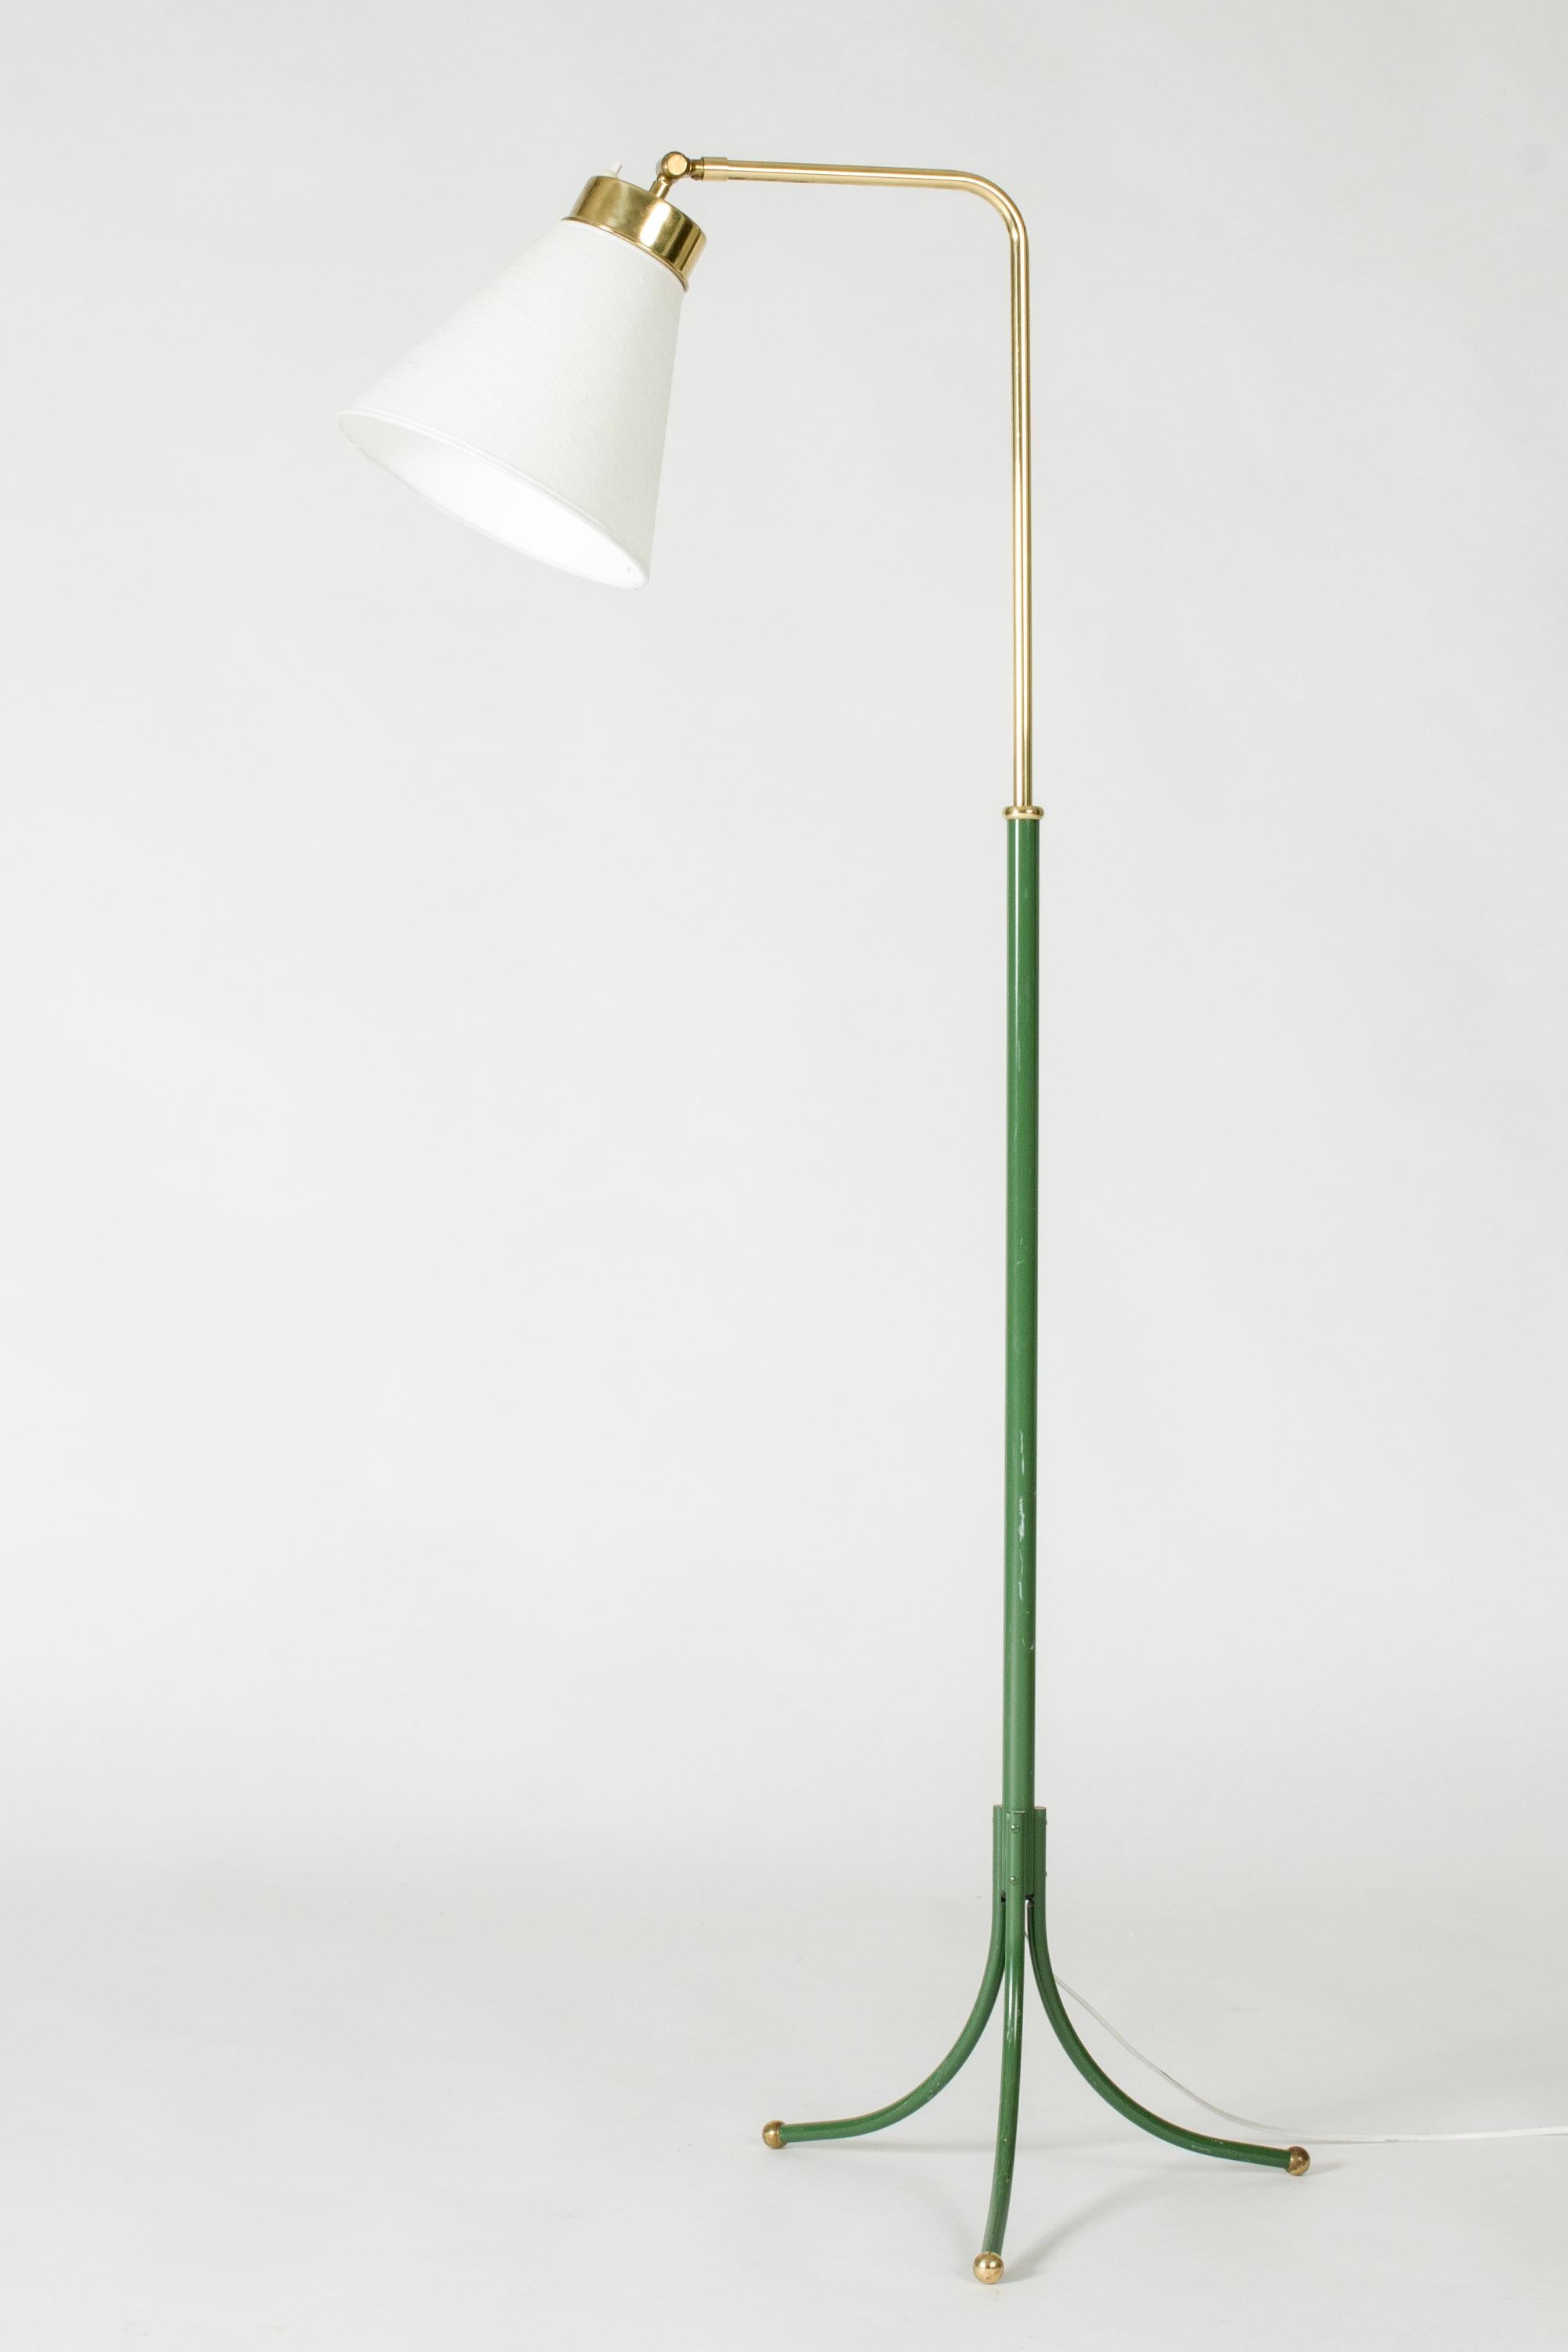 Scandinavian Modern Brass Floor Lamp model #1842 by Josef Frank for Svenskt Tenn, Sweden, 1950s